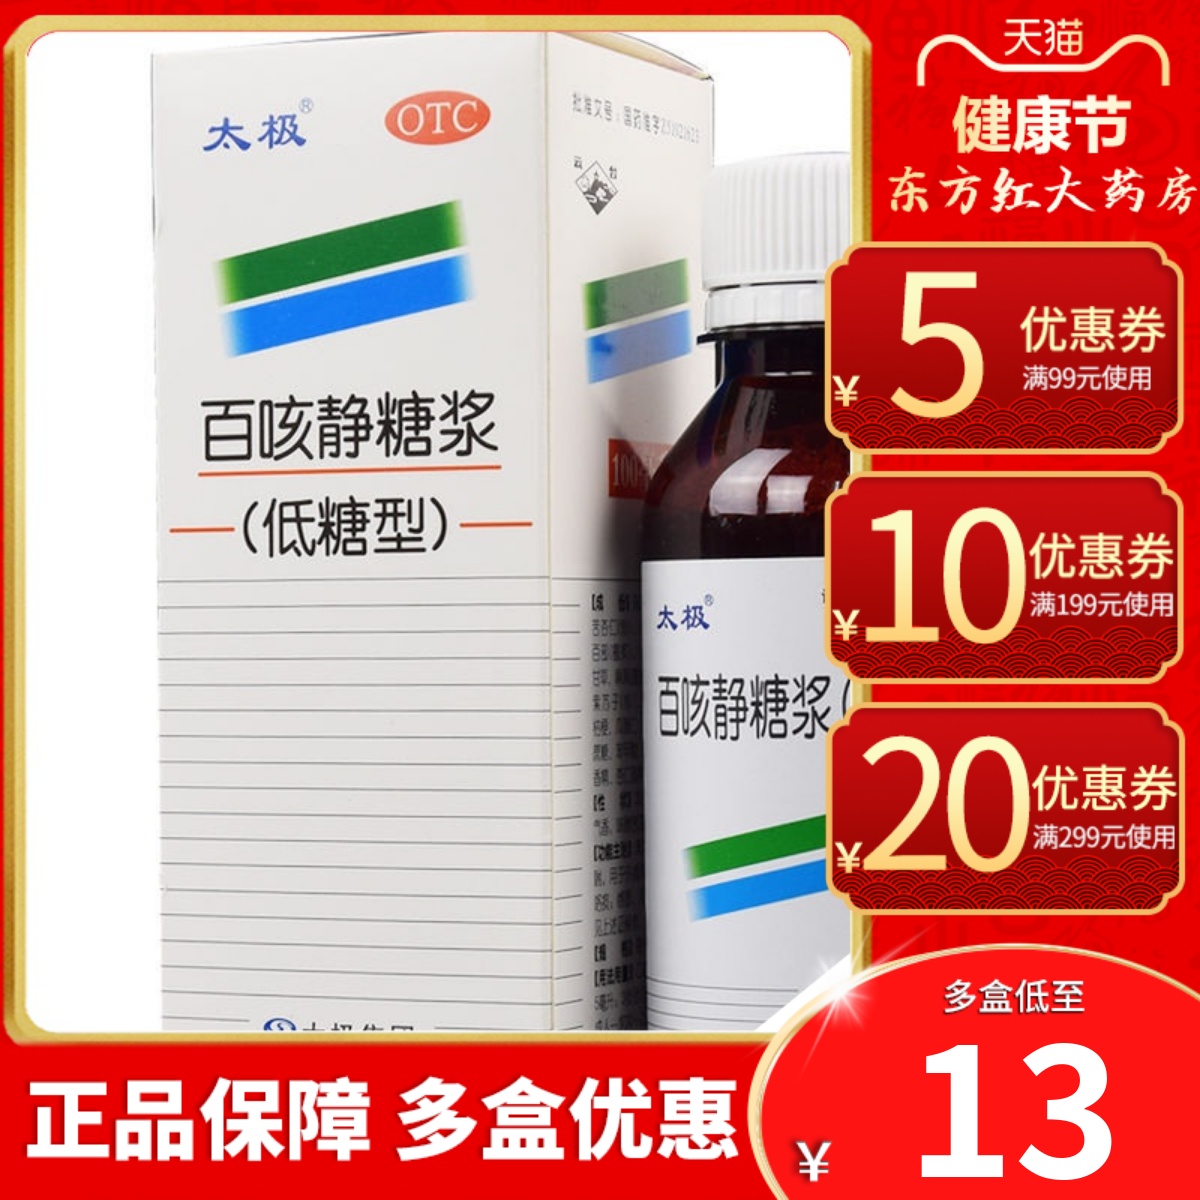 【太极】百咳静糖浆(低糖型)100ml*1瓶/盒